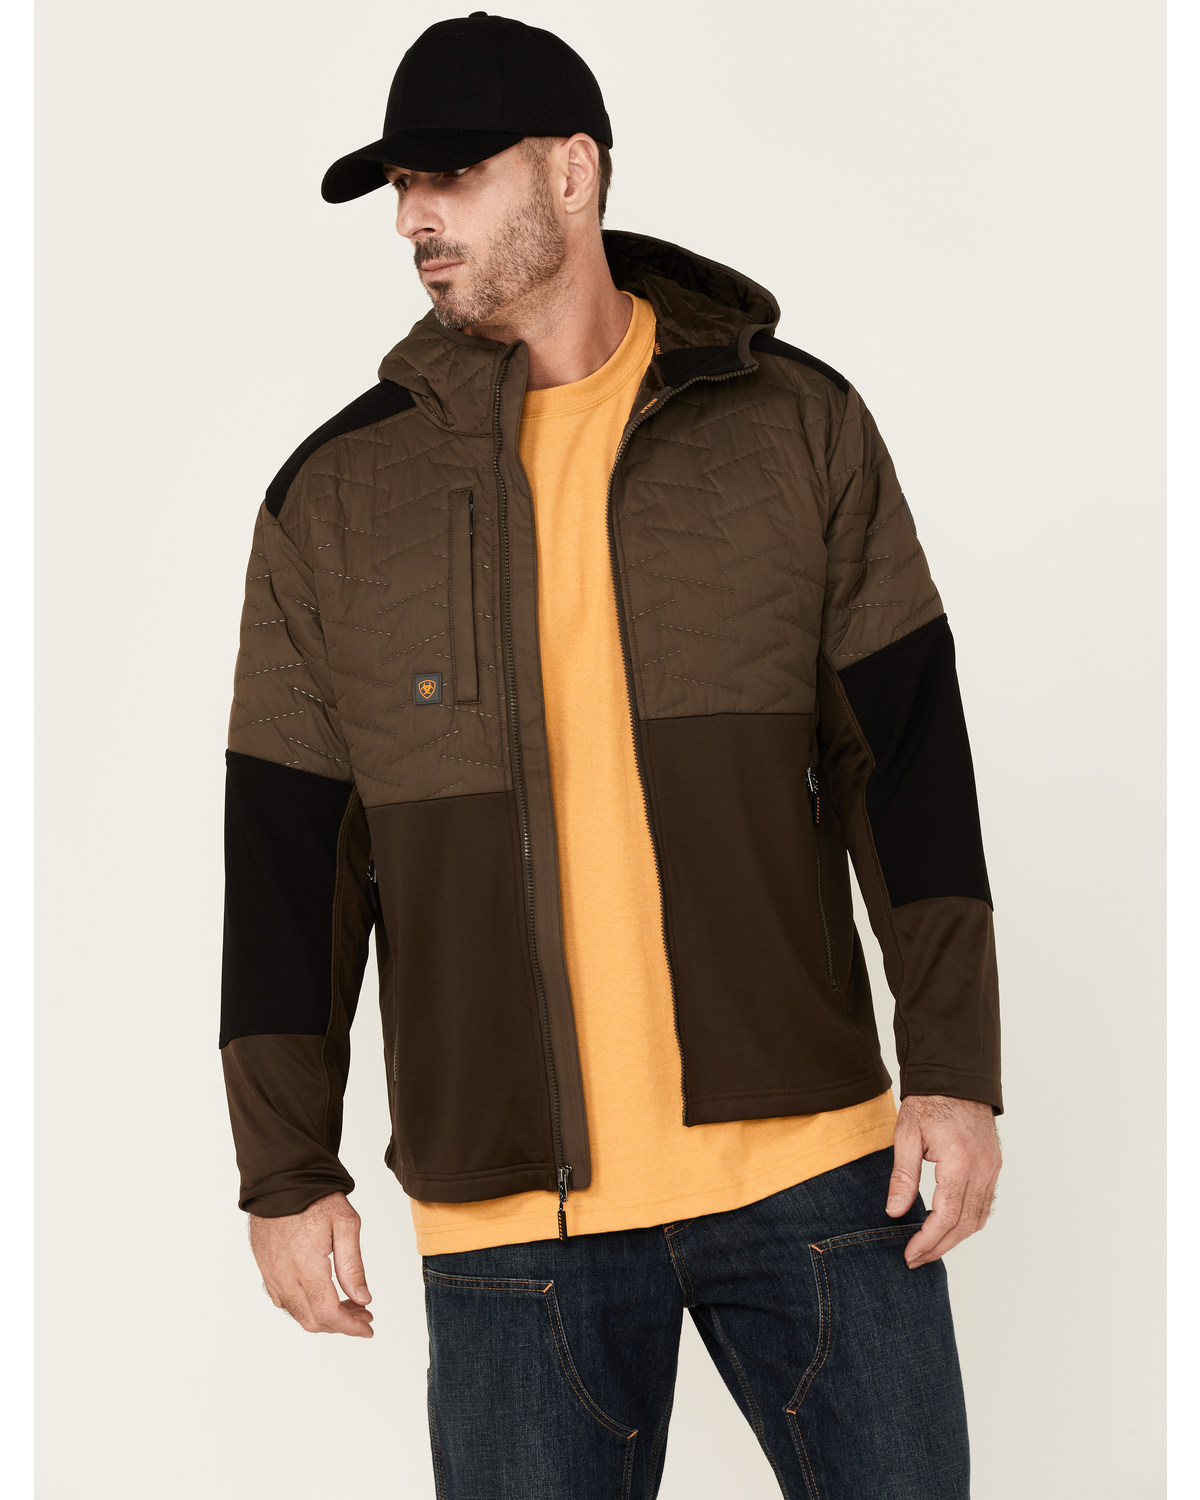 Ariat Men's Rebar Wren Cloud 9 Insulated Zip-Front Work Jacket